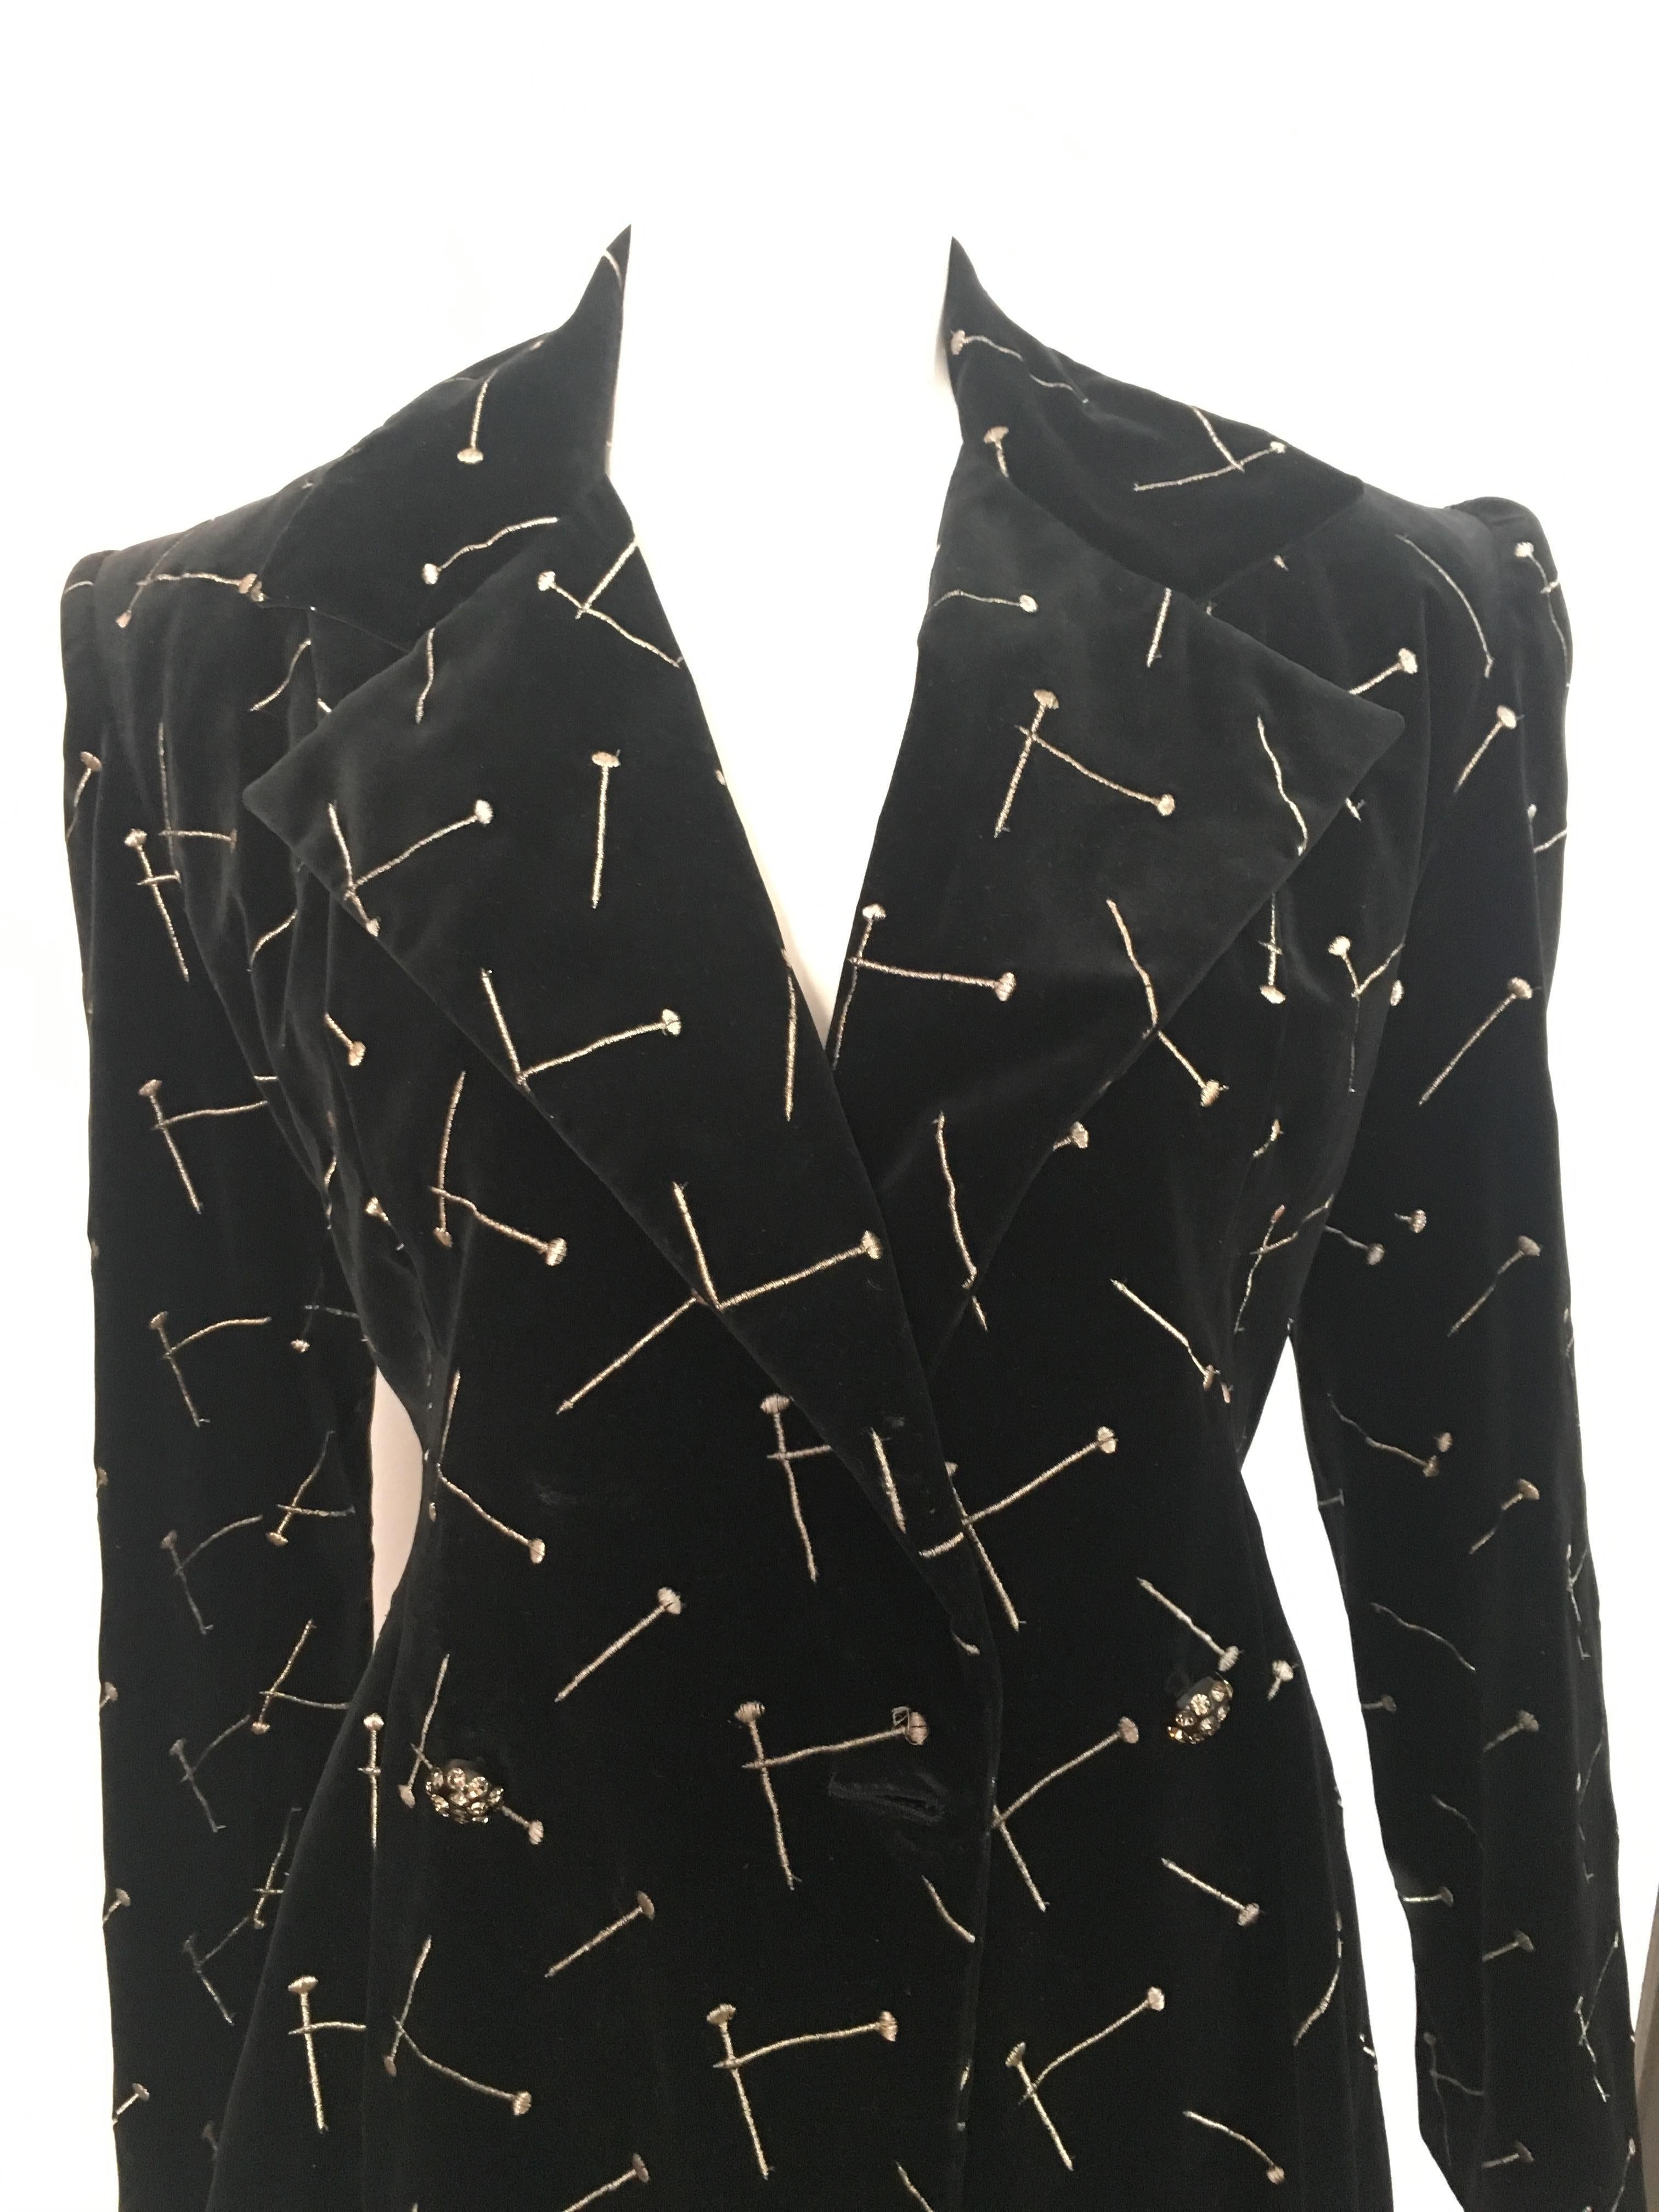 Patrick Kelly 1988 Black Velvet 'Nail' Skirt Suit Size 4. For Sale 1